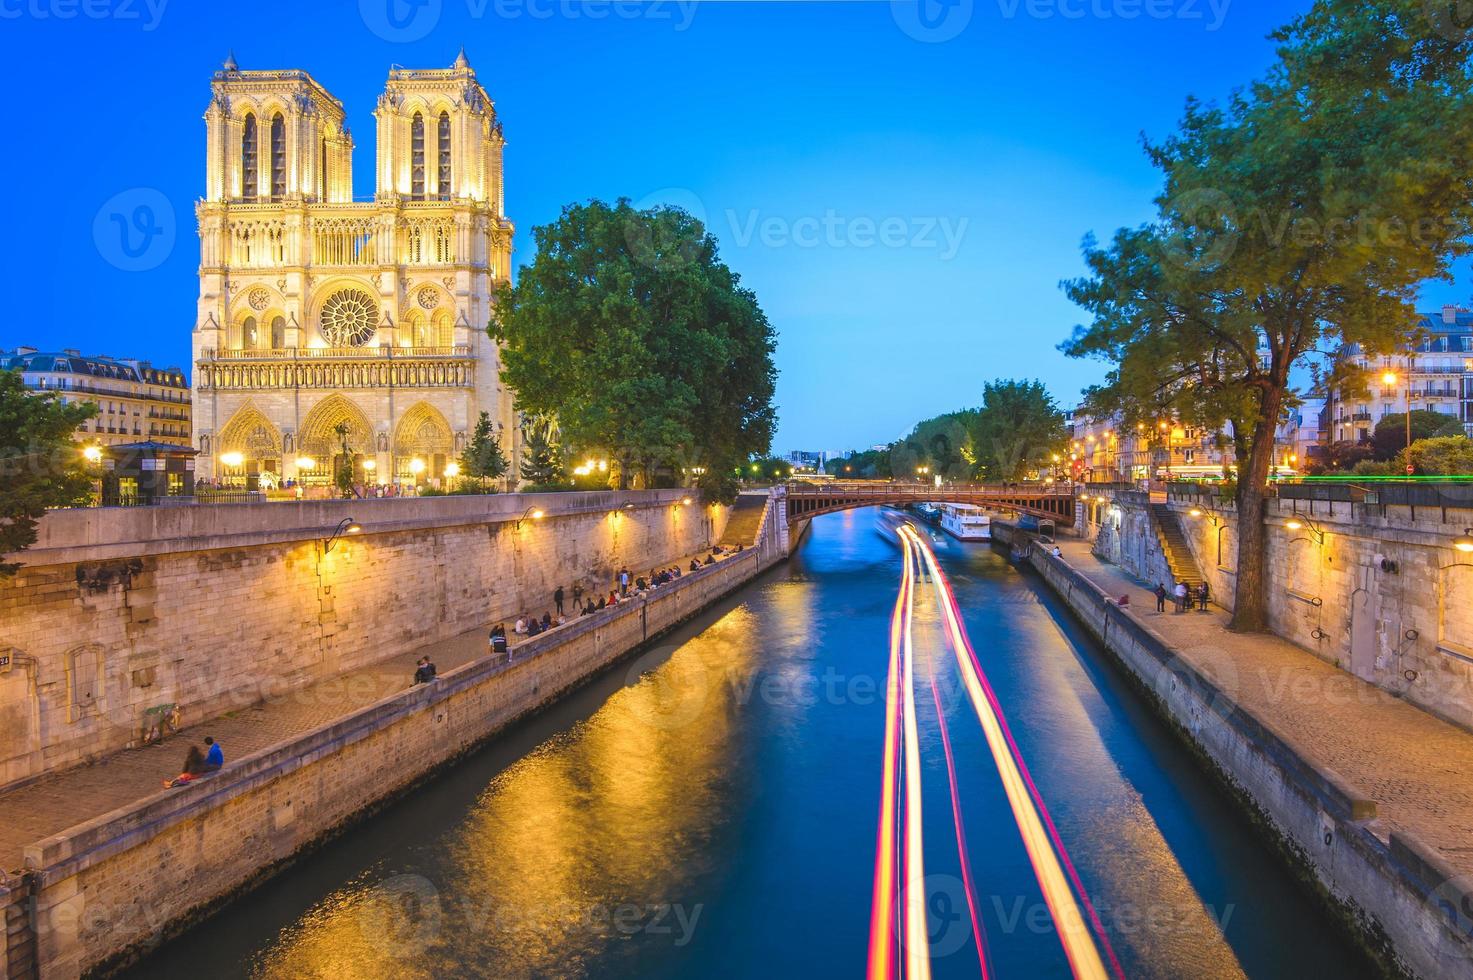 Notre Dame de Paris Cathedral in Paris France photo